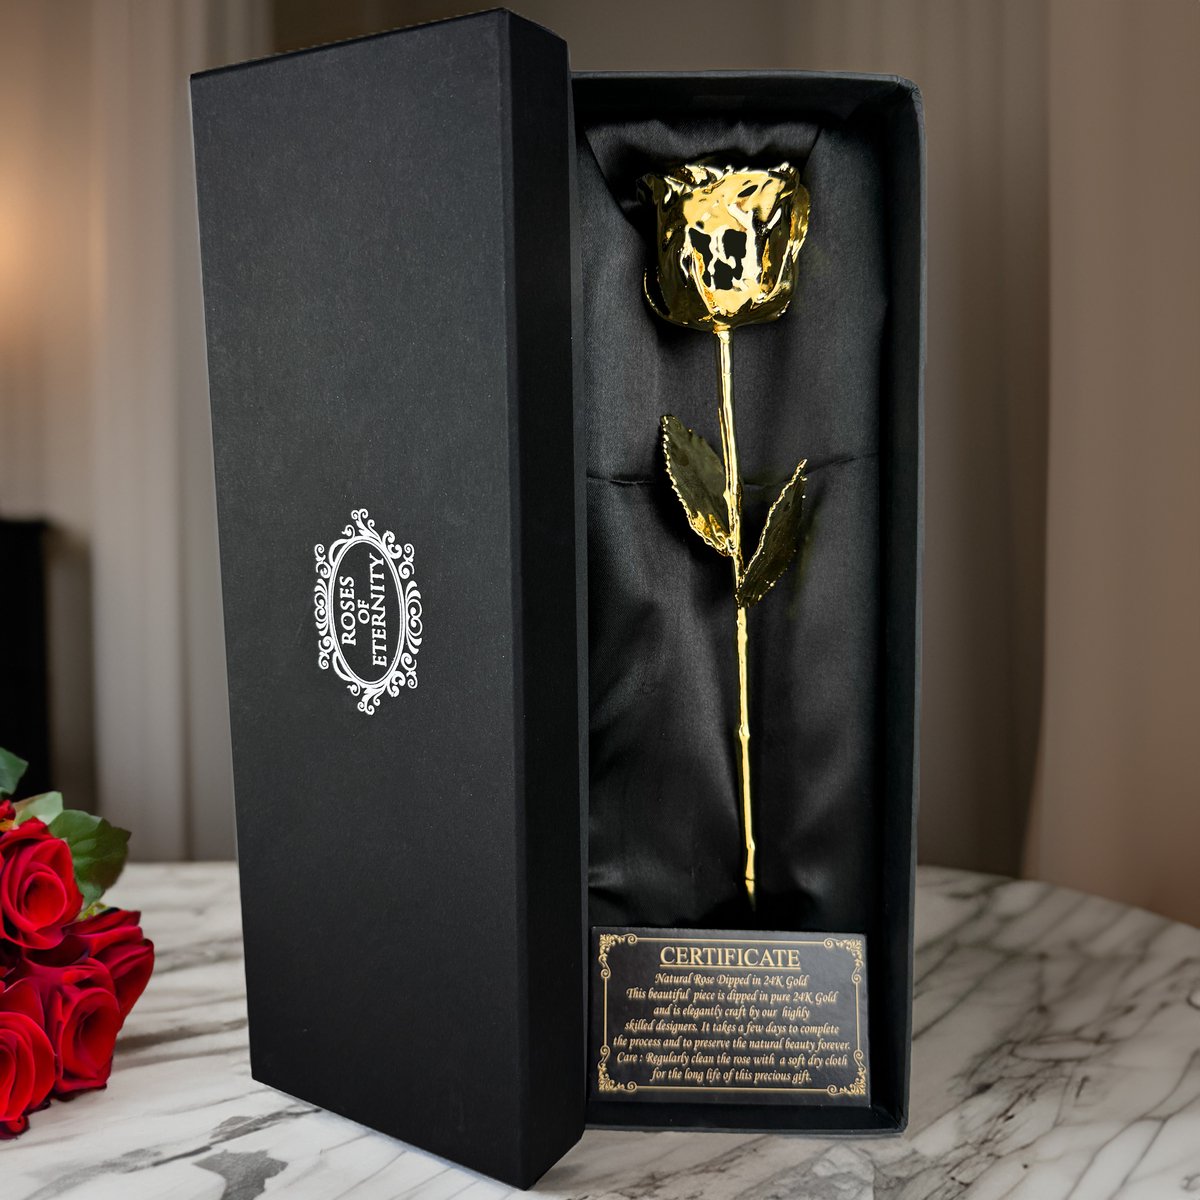 Roses of Eternity - 24K Gouden Roos - Cadeau voor Moederdag, vrouw, vriendin, haar, Huwelijk - Romantisch Liefdes cadeautje - Roses of Eternity